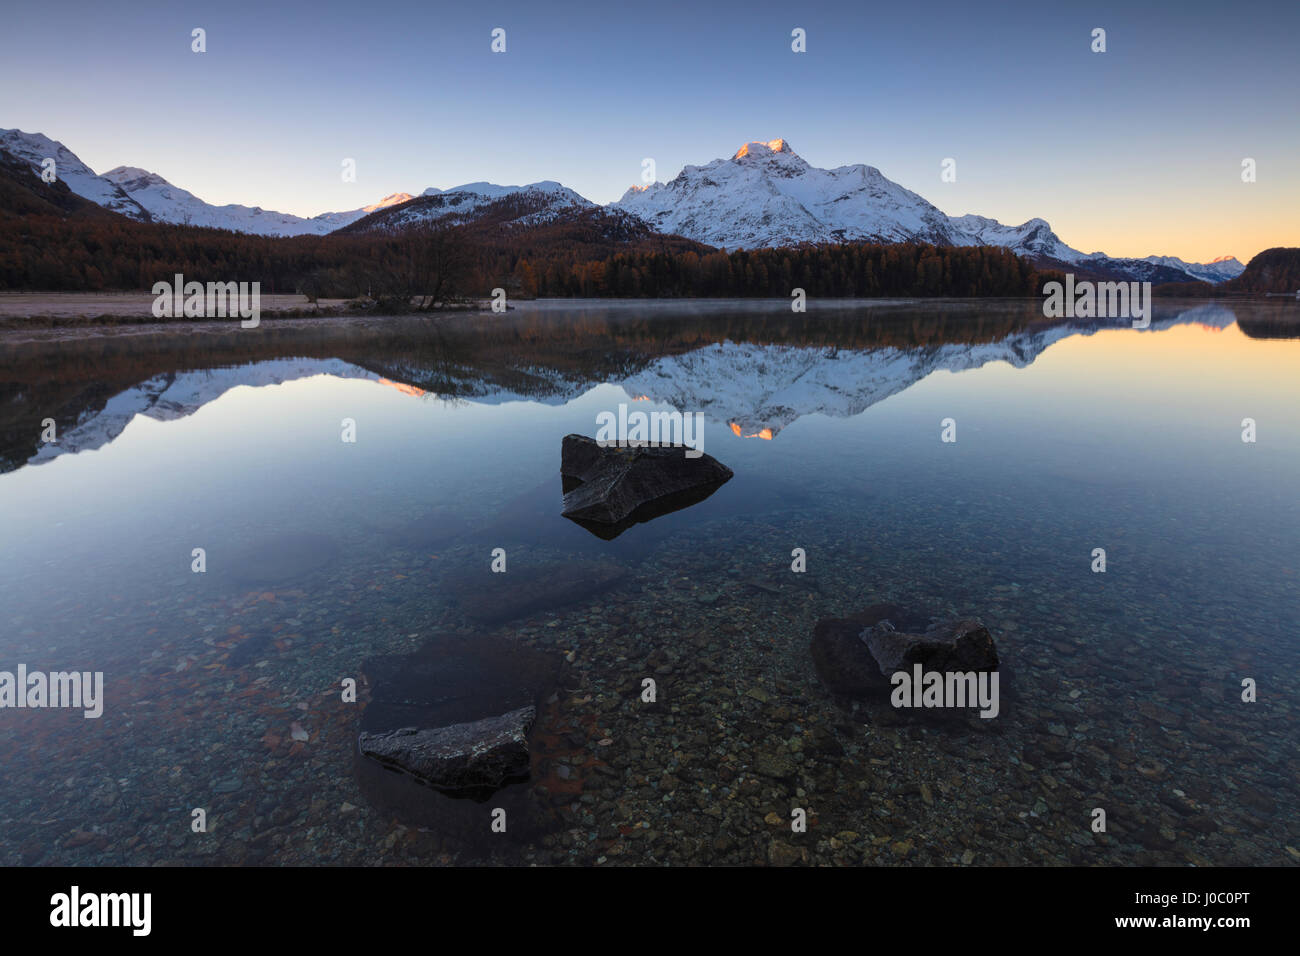 Le cime innevate sono riflesse nel lago a smusso sunrise, St Moritz, Canton Grigioni, Engadina, Svizzera Foto Stock